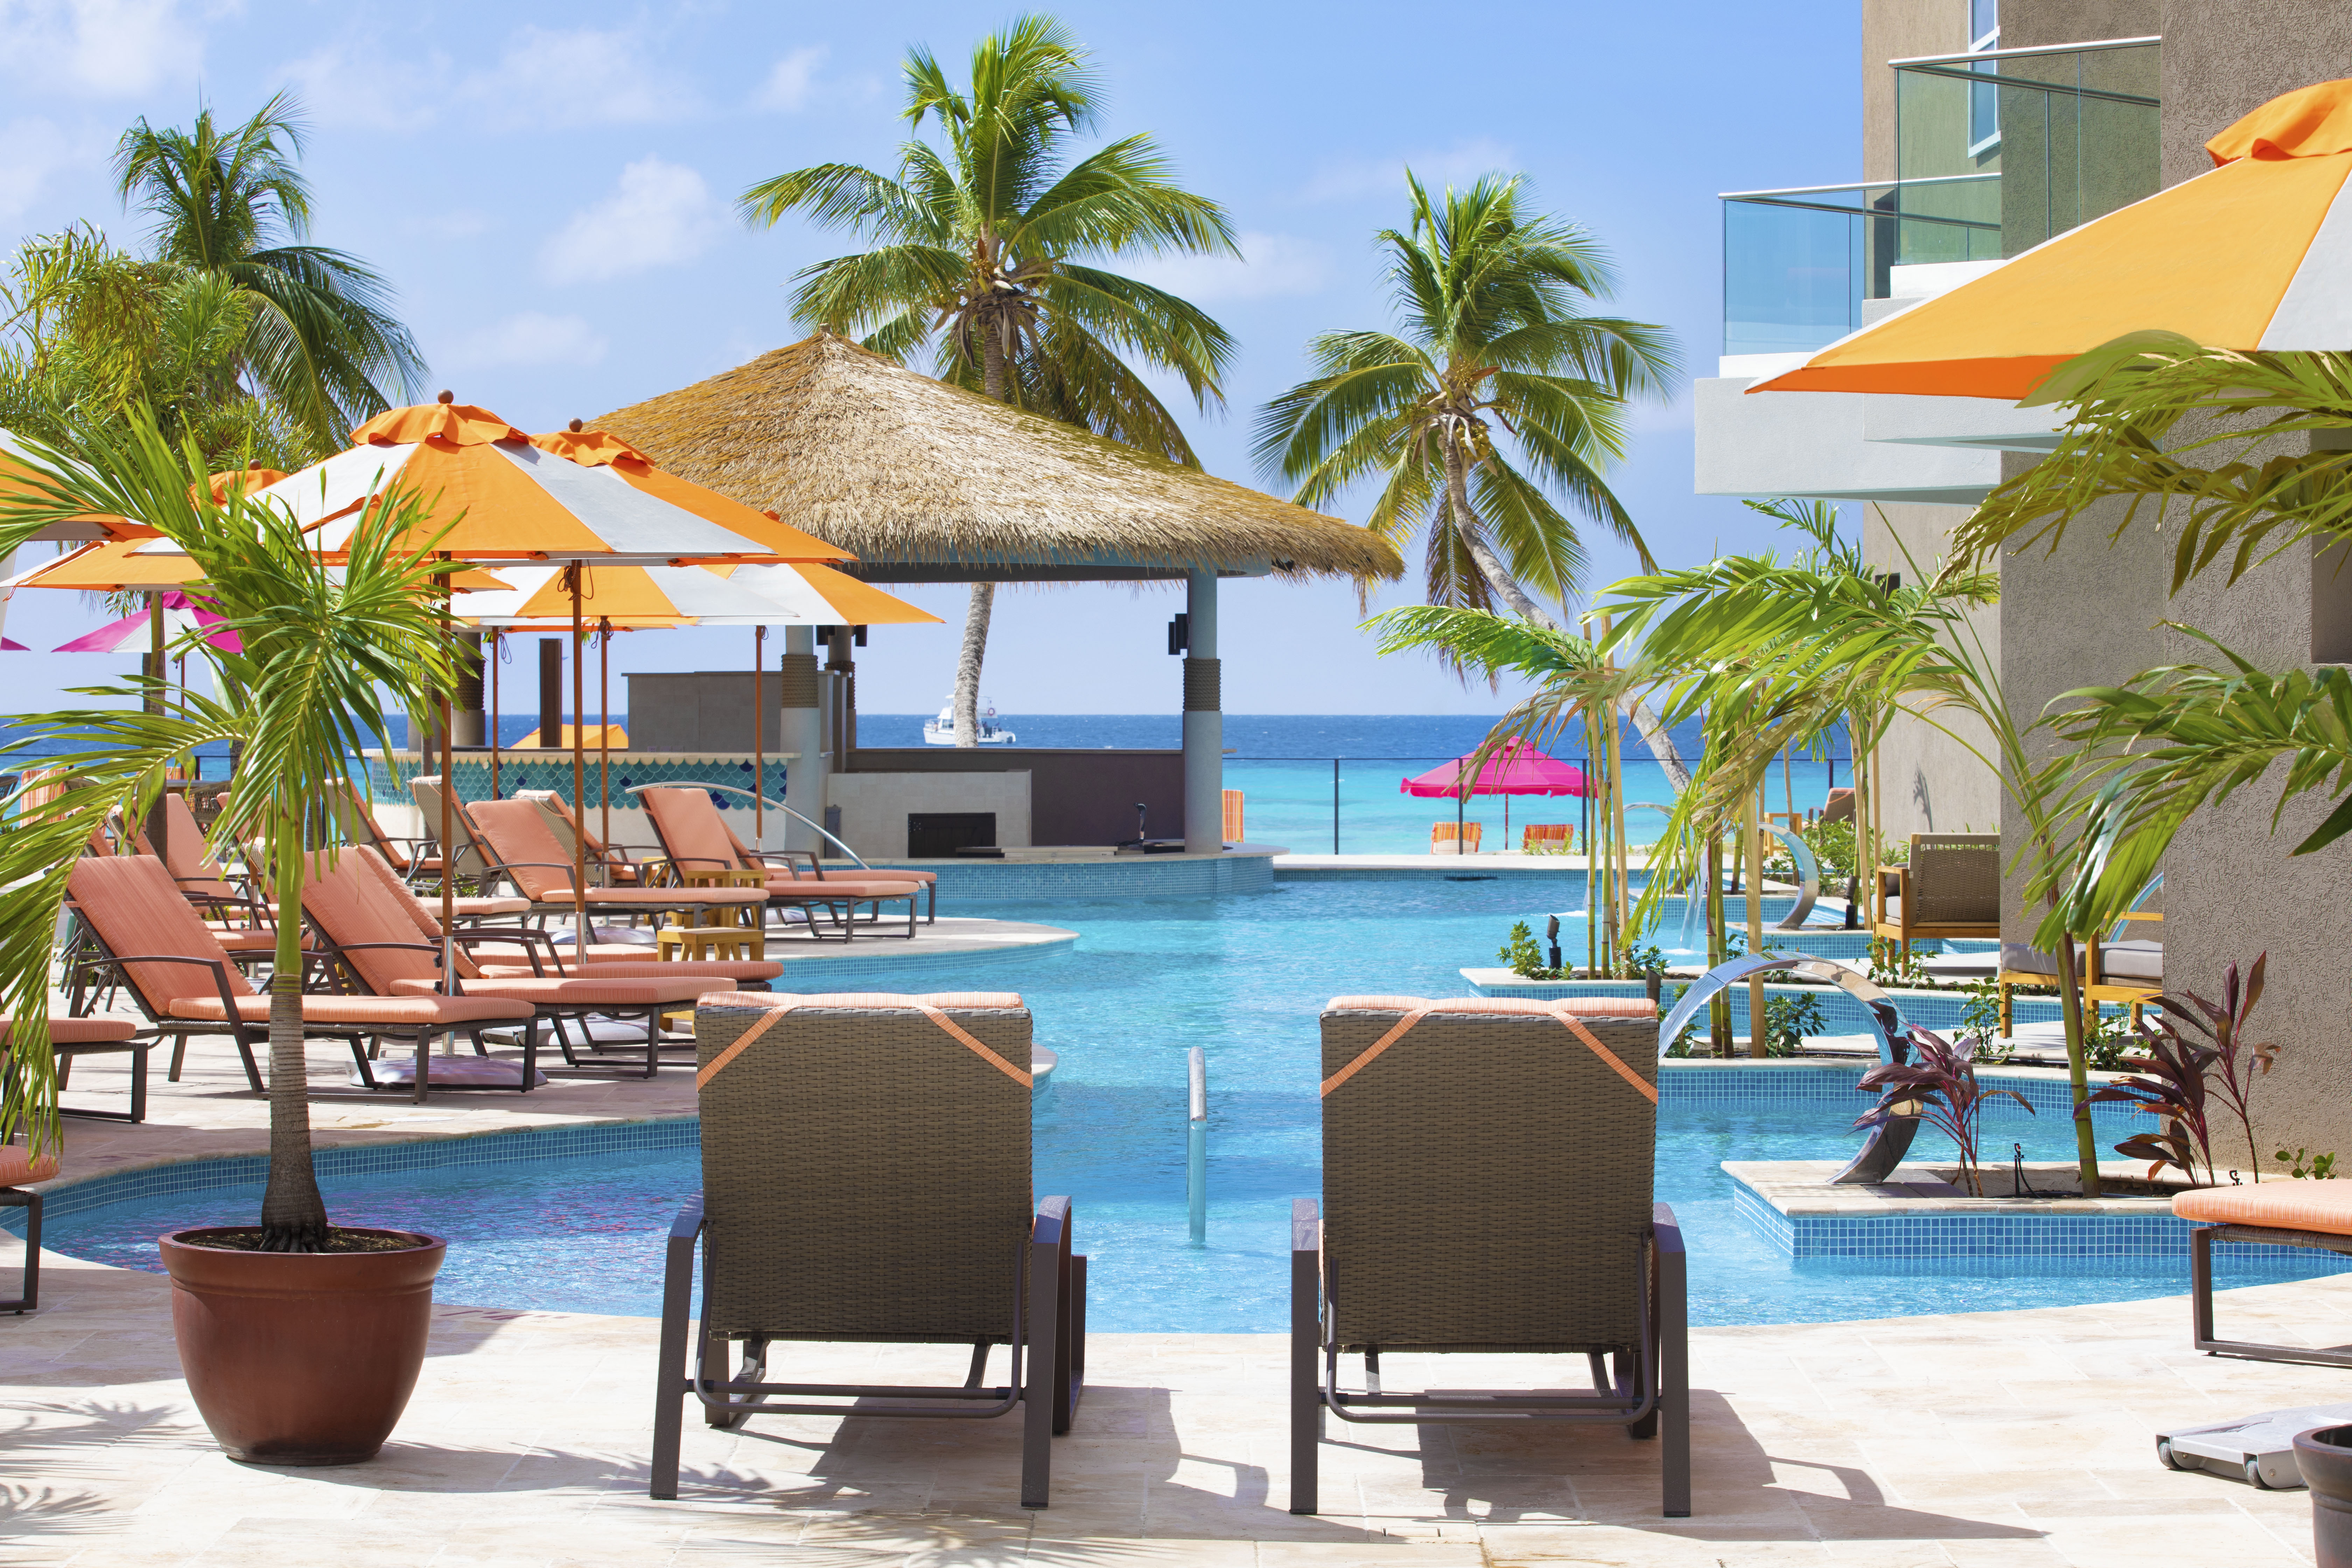 O2 Beach Club & Spa ng Ocean Hotels